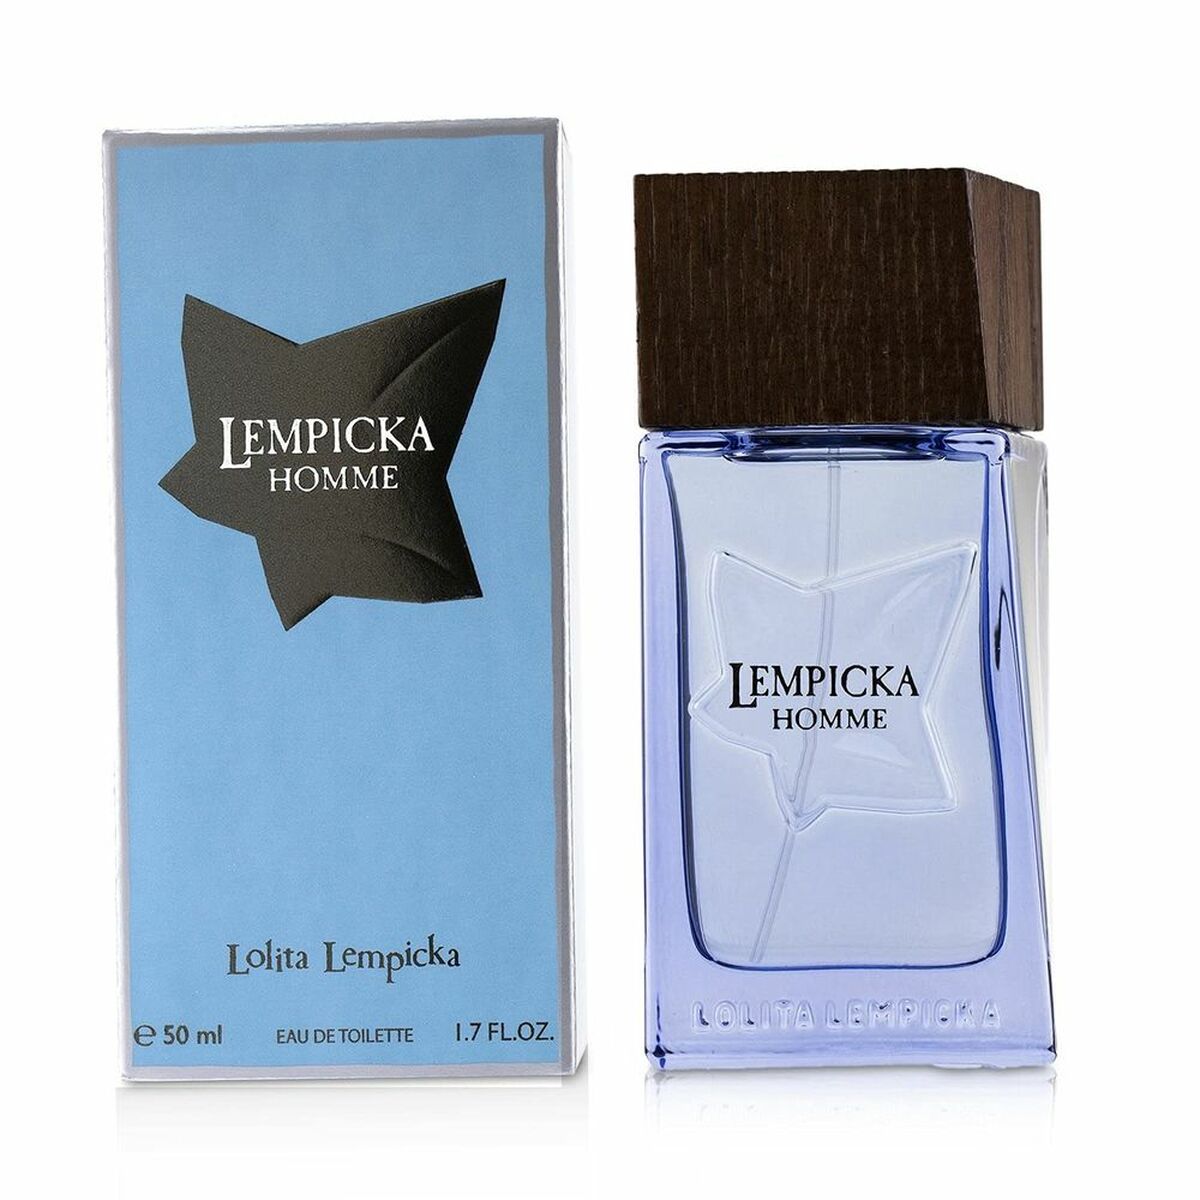 Parfum Homme Lempicka Homme Lolita Lempicka EDT (50 ml)